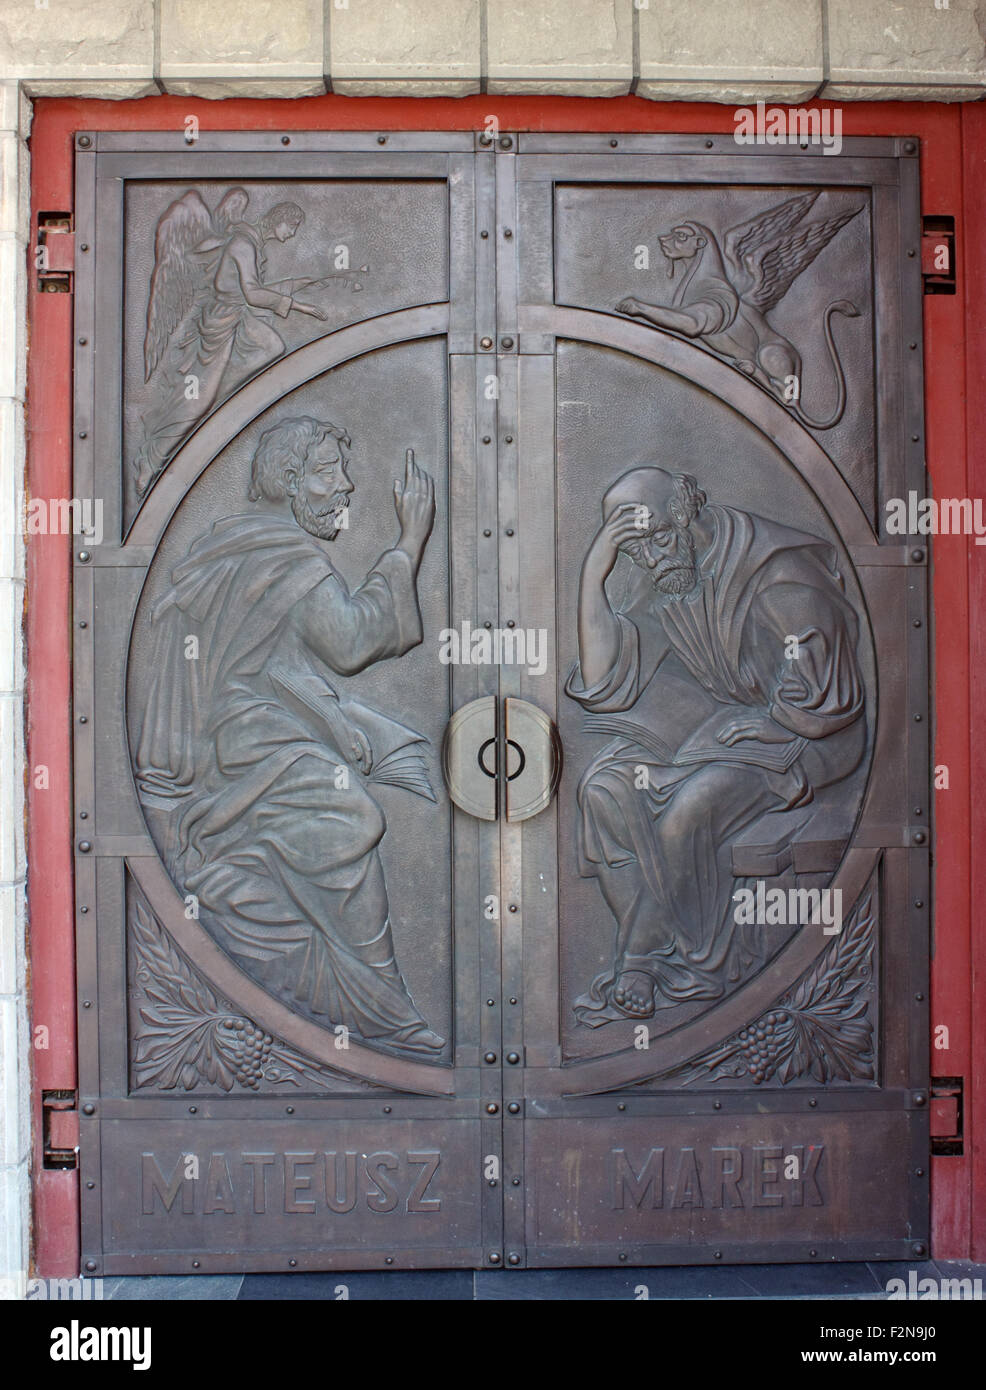 Metalltür mit Bildern von St. Markus und Matthäus Stockfoto